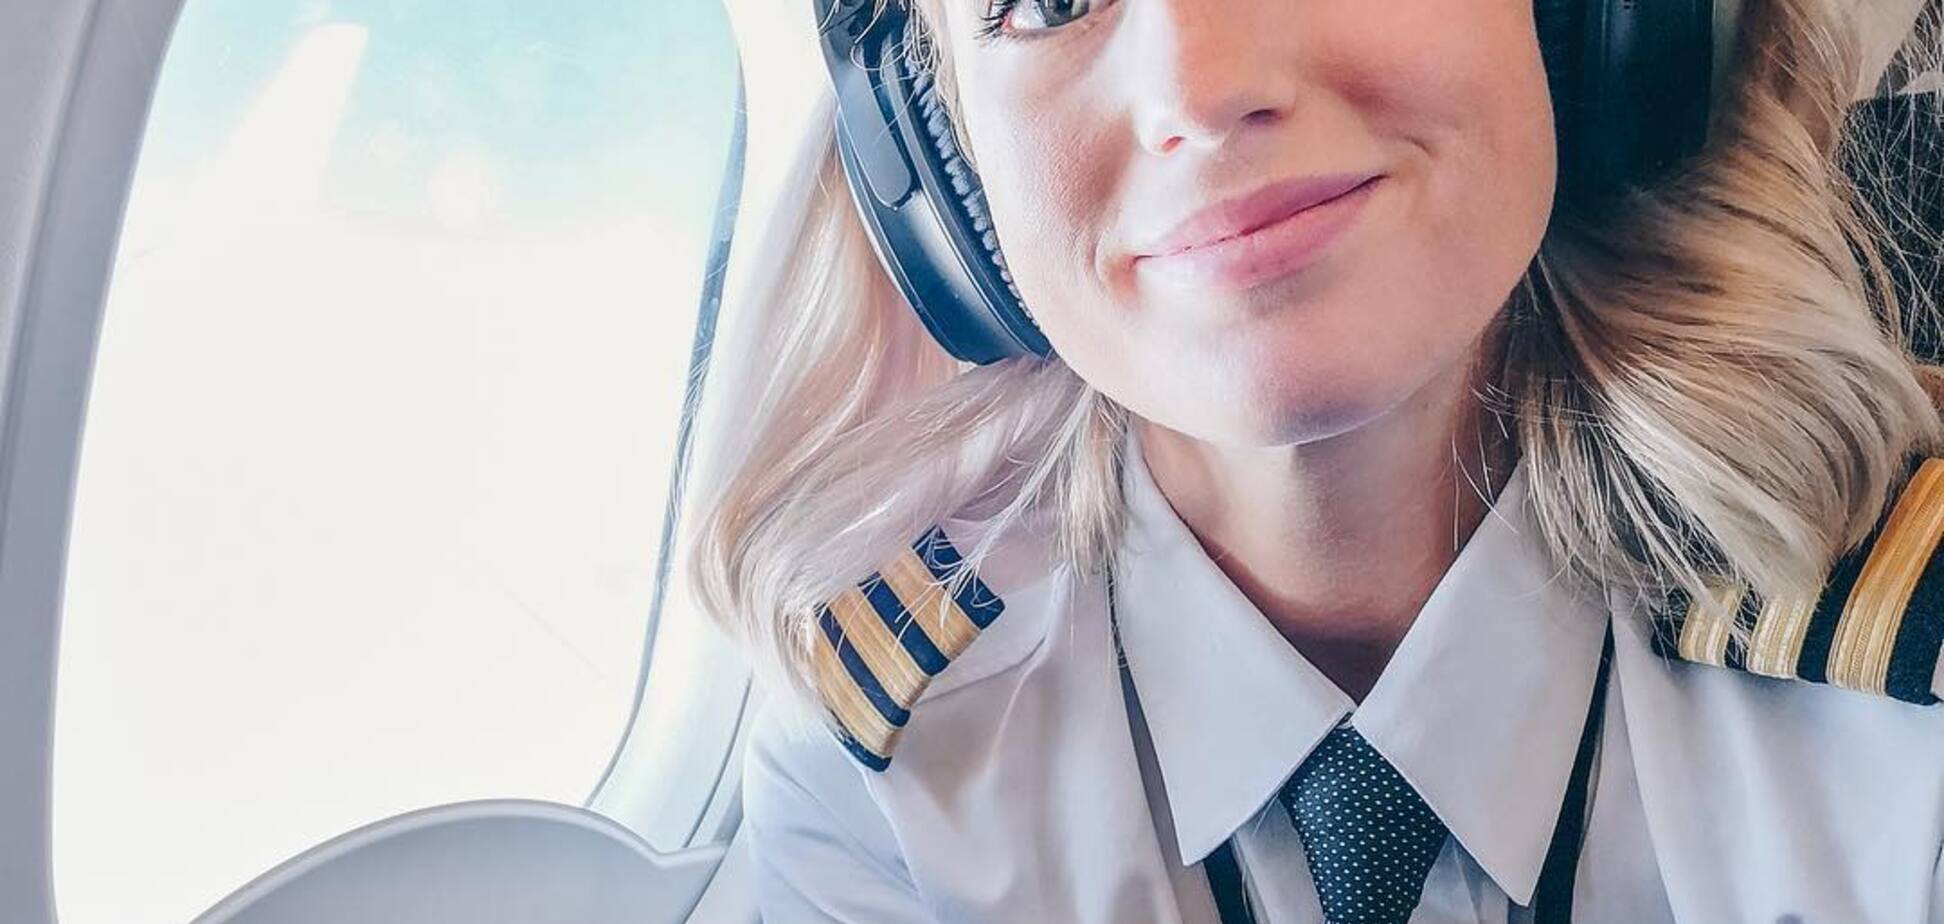 Топ-10 невероятных девушек-пилотов, покоривших Instagram